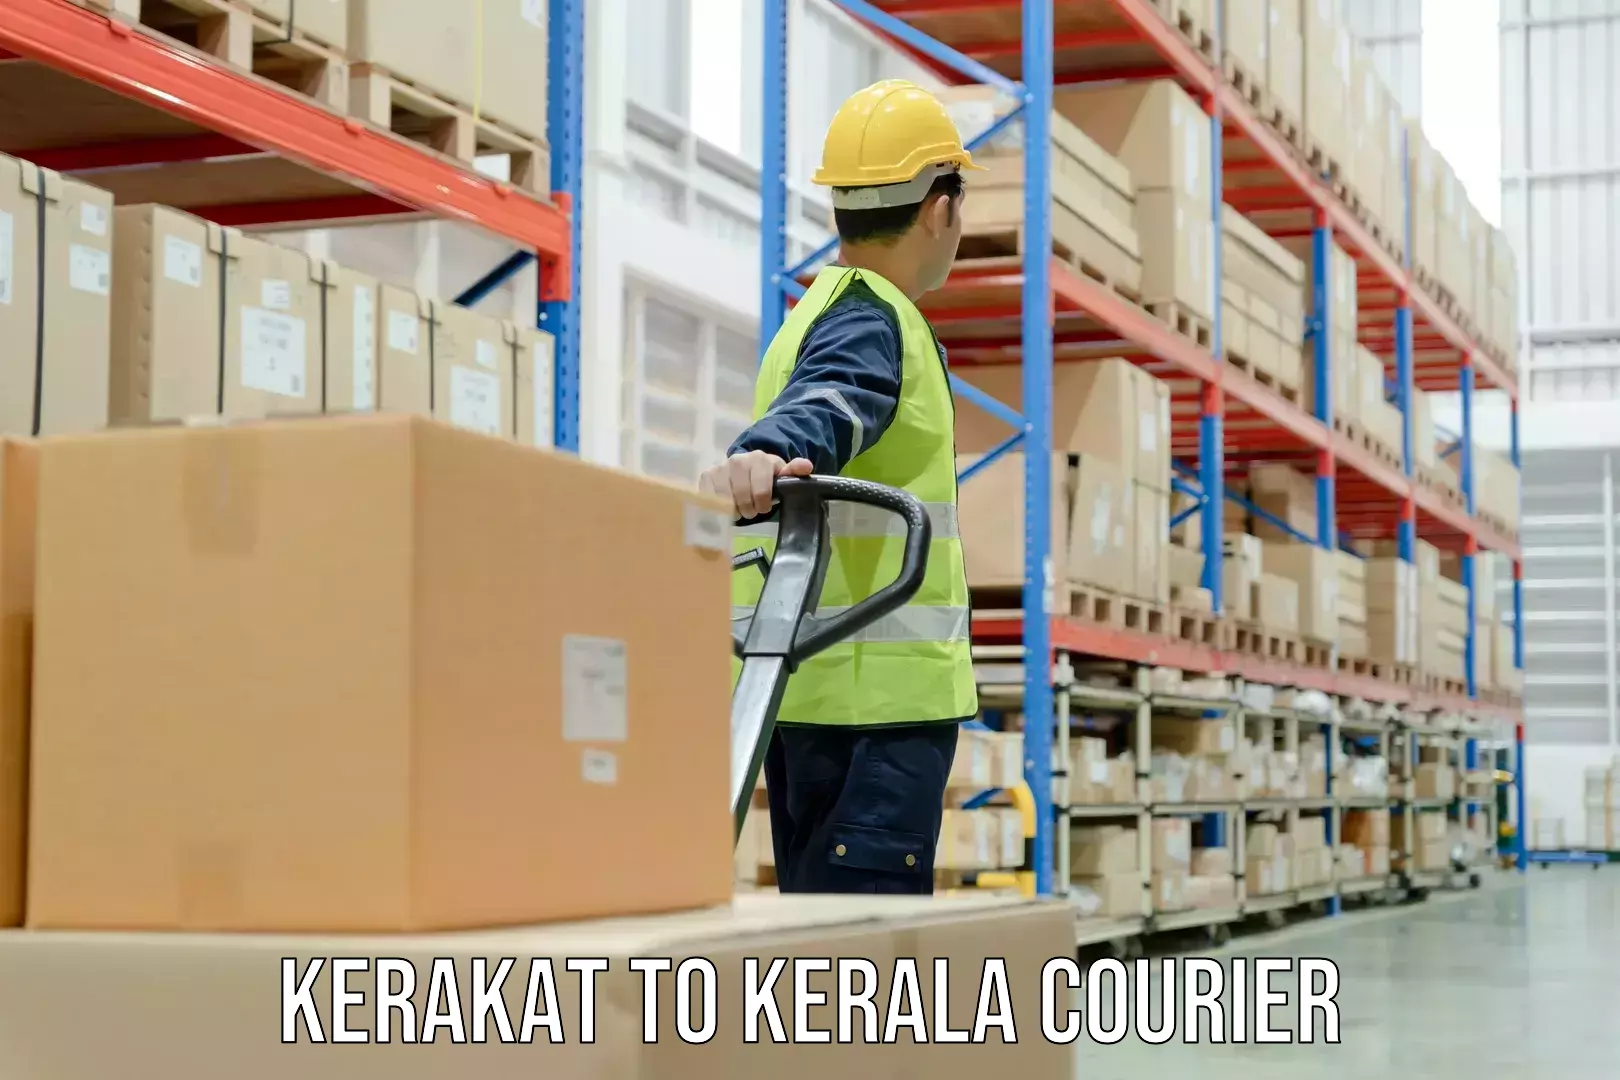 High-capacity shipping options Kerakat to Elamakkara